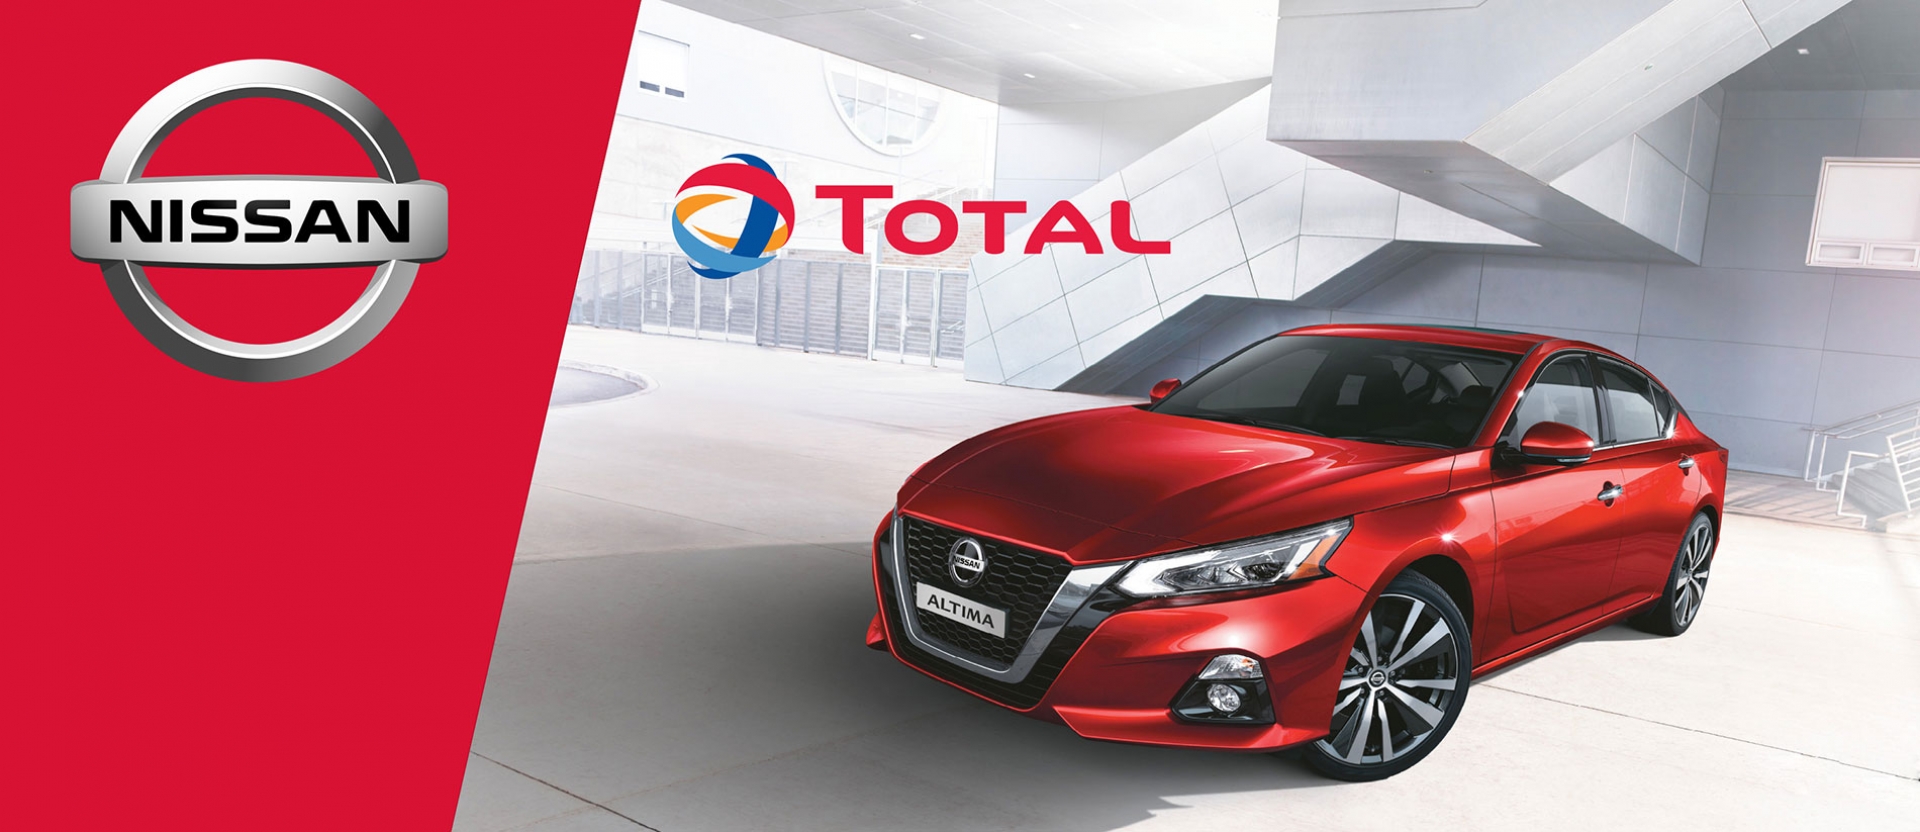 Partnerstvo dvoch svetových značiek Total a Nissan v inováciách